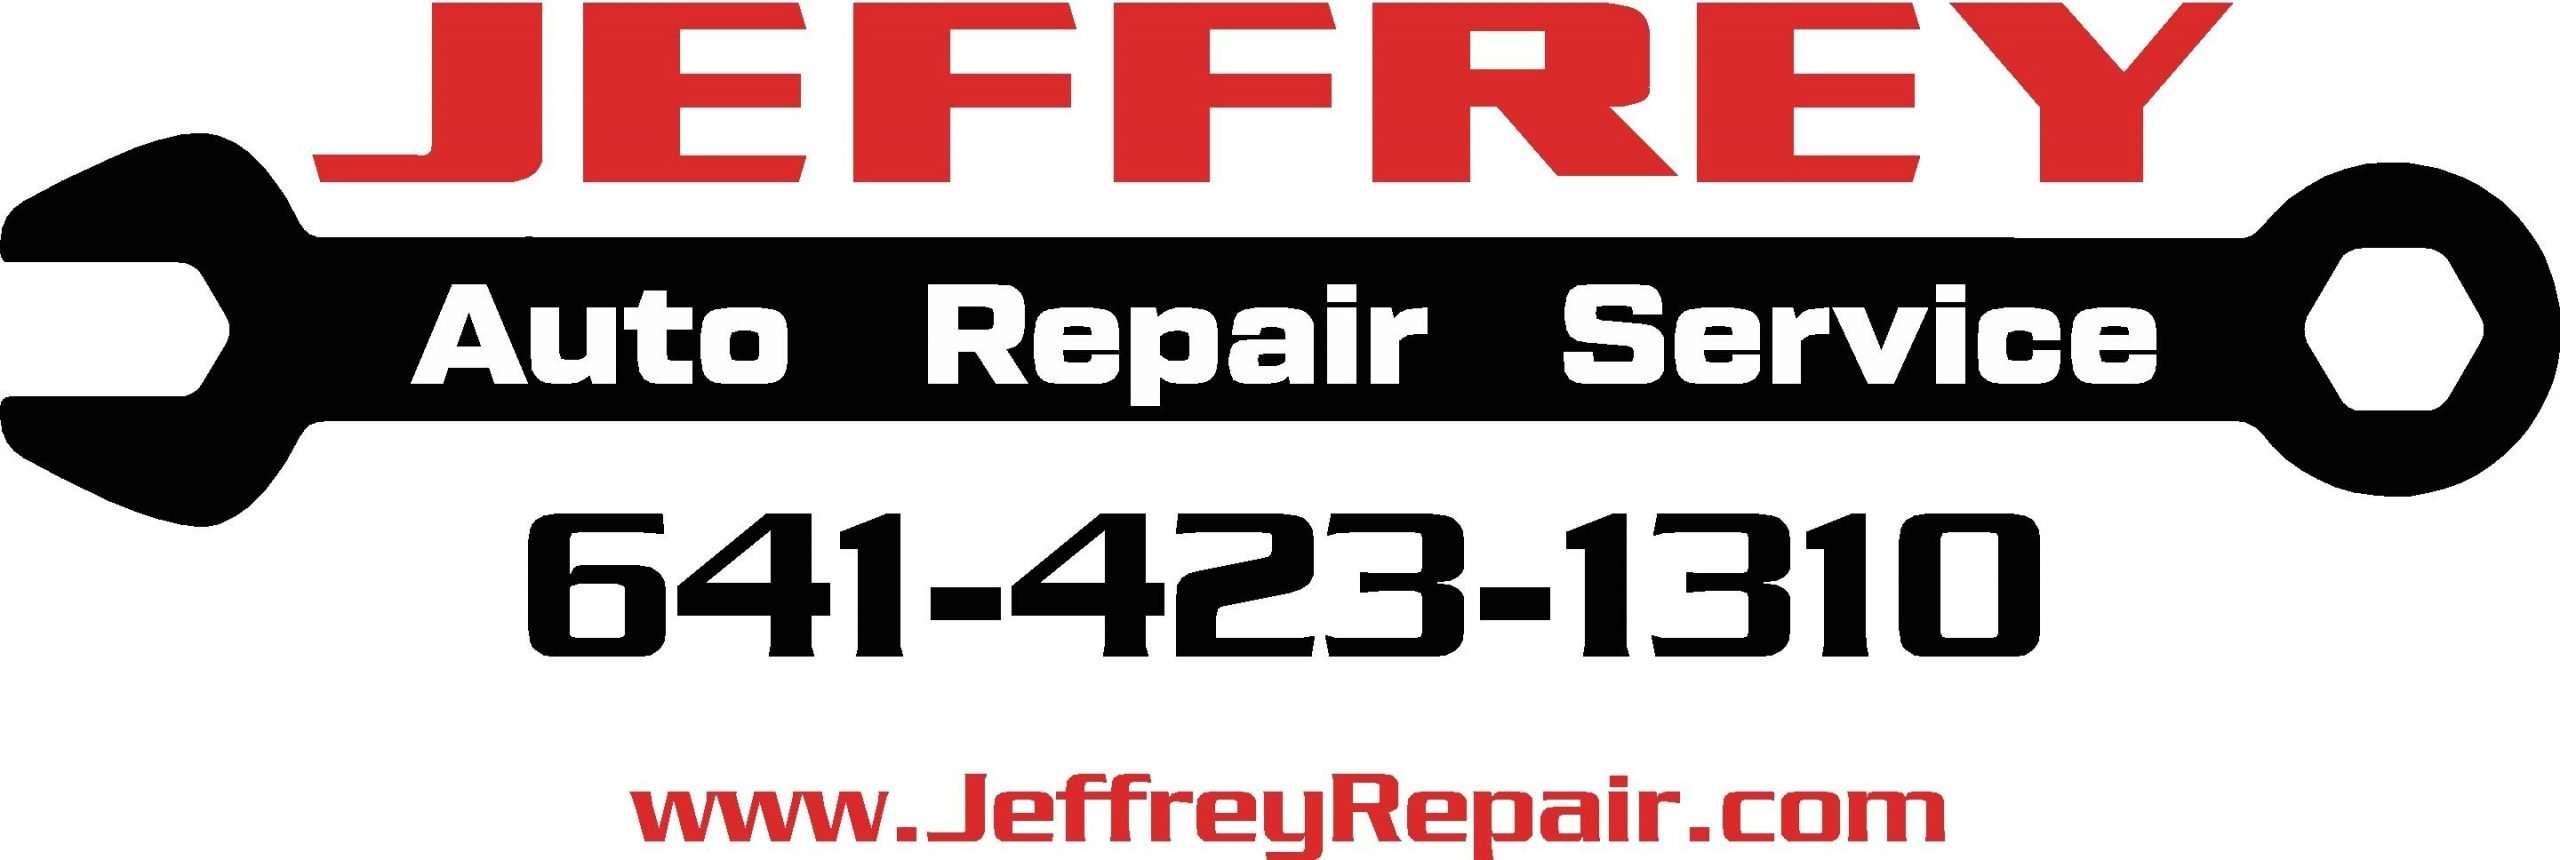 Jeffery Auto Repair